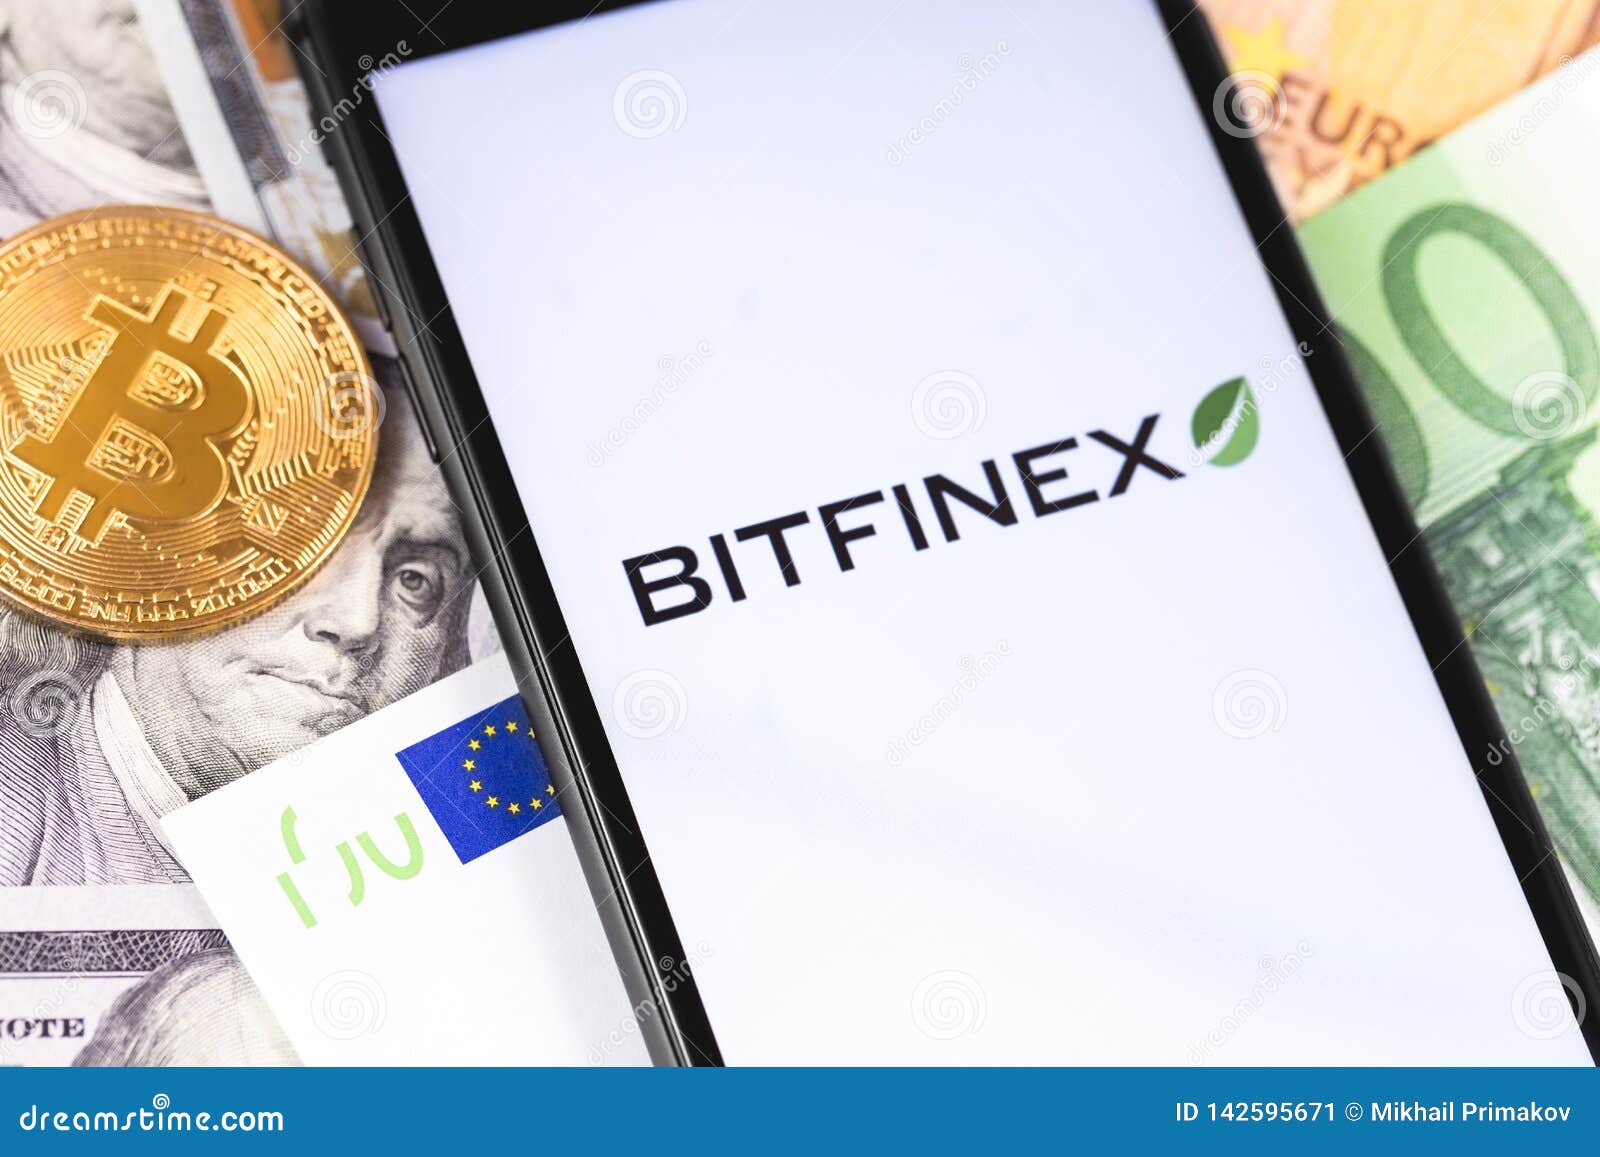 bitfinex és bitcoin készpénzes kereskedés